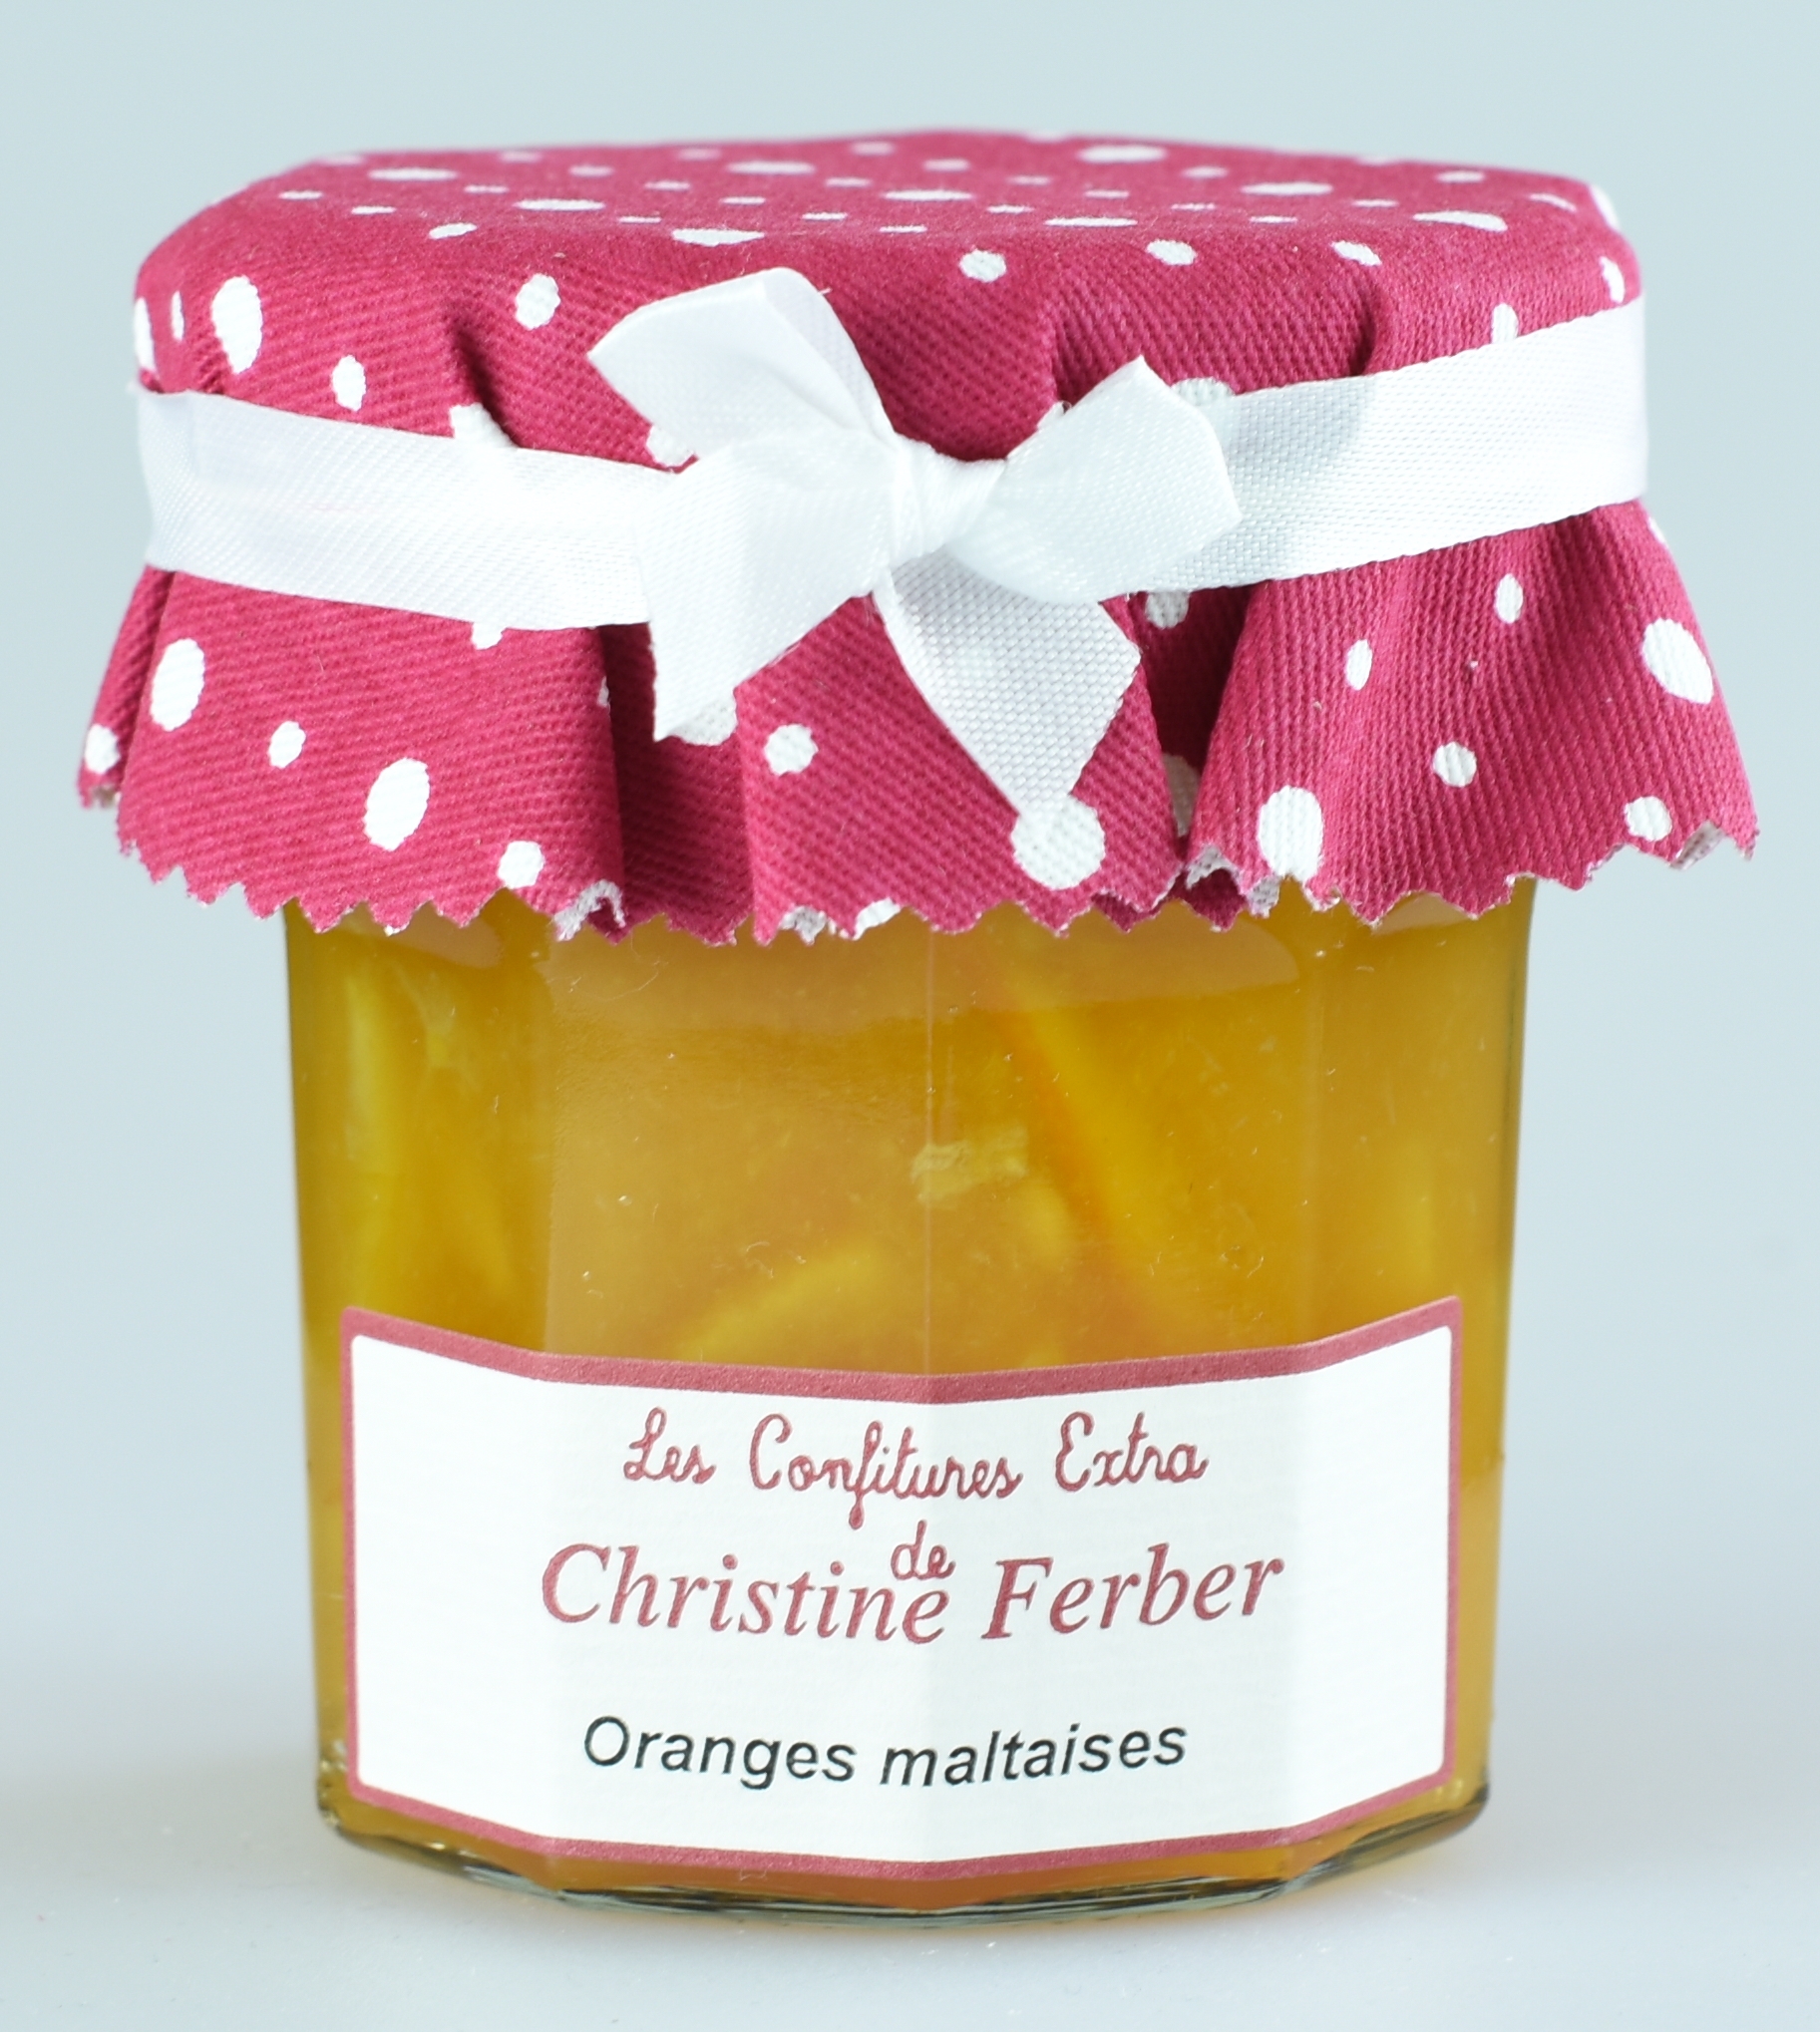 Orangen, Marmelade mit Fruchtstücke, Orange Maltaises, Christine Ferber 0,22 kg